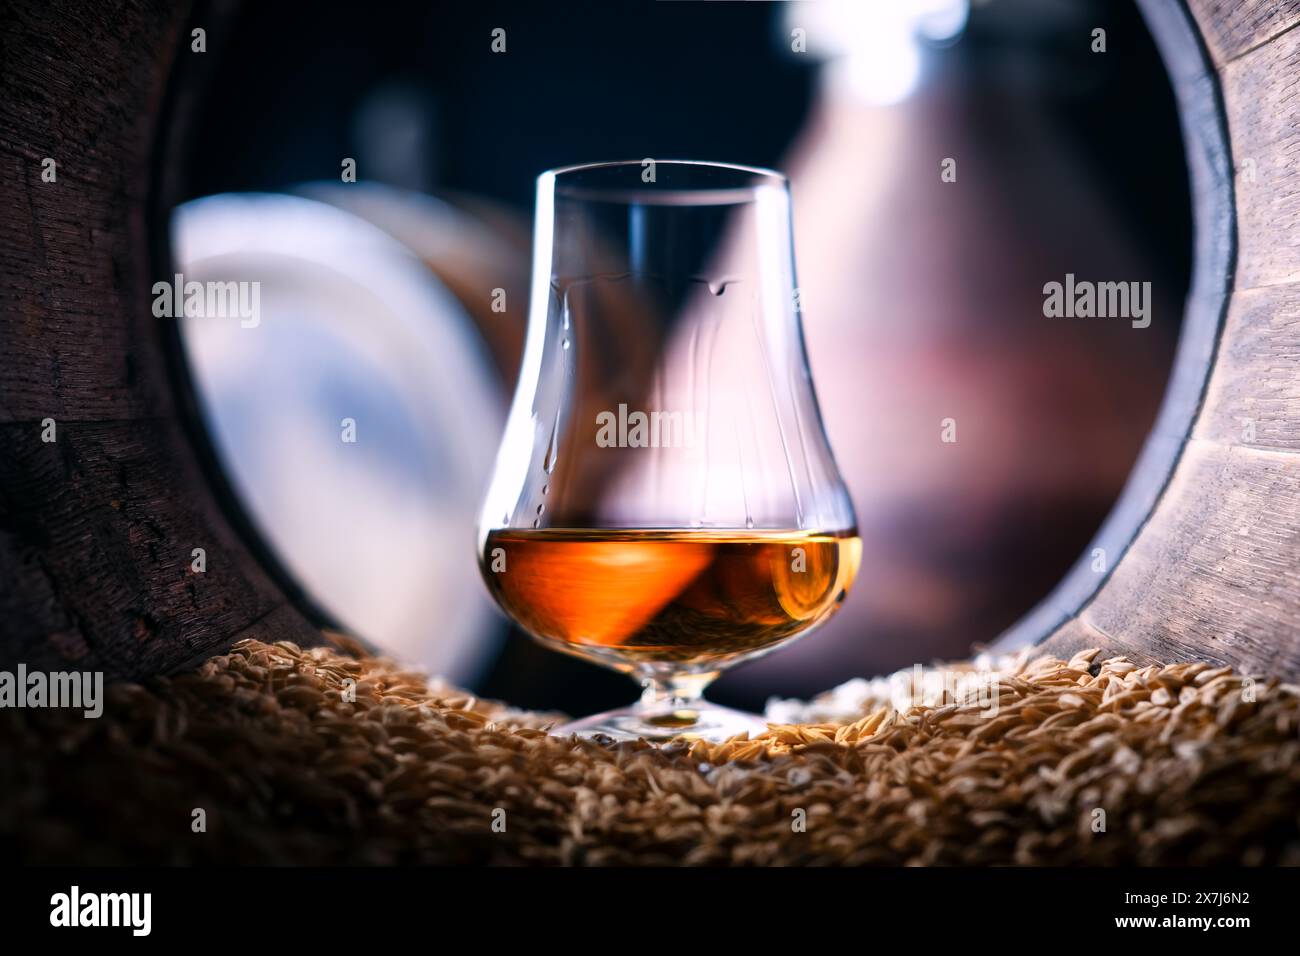 Des gouttelettes de whisky single malt vieilli coulent dans un verre debout dans un vieux fût de chêne avec des grains d'orge. Concept traditionnel de distillerie d'alcool Banque D'Images